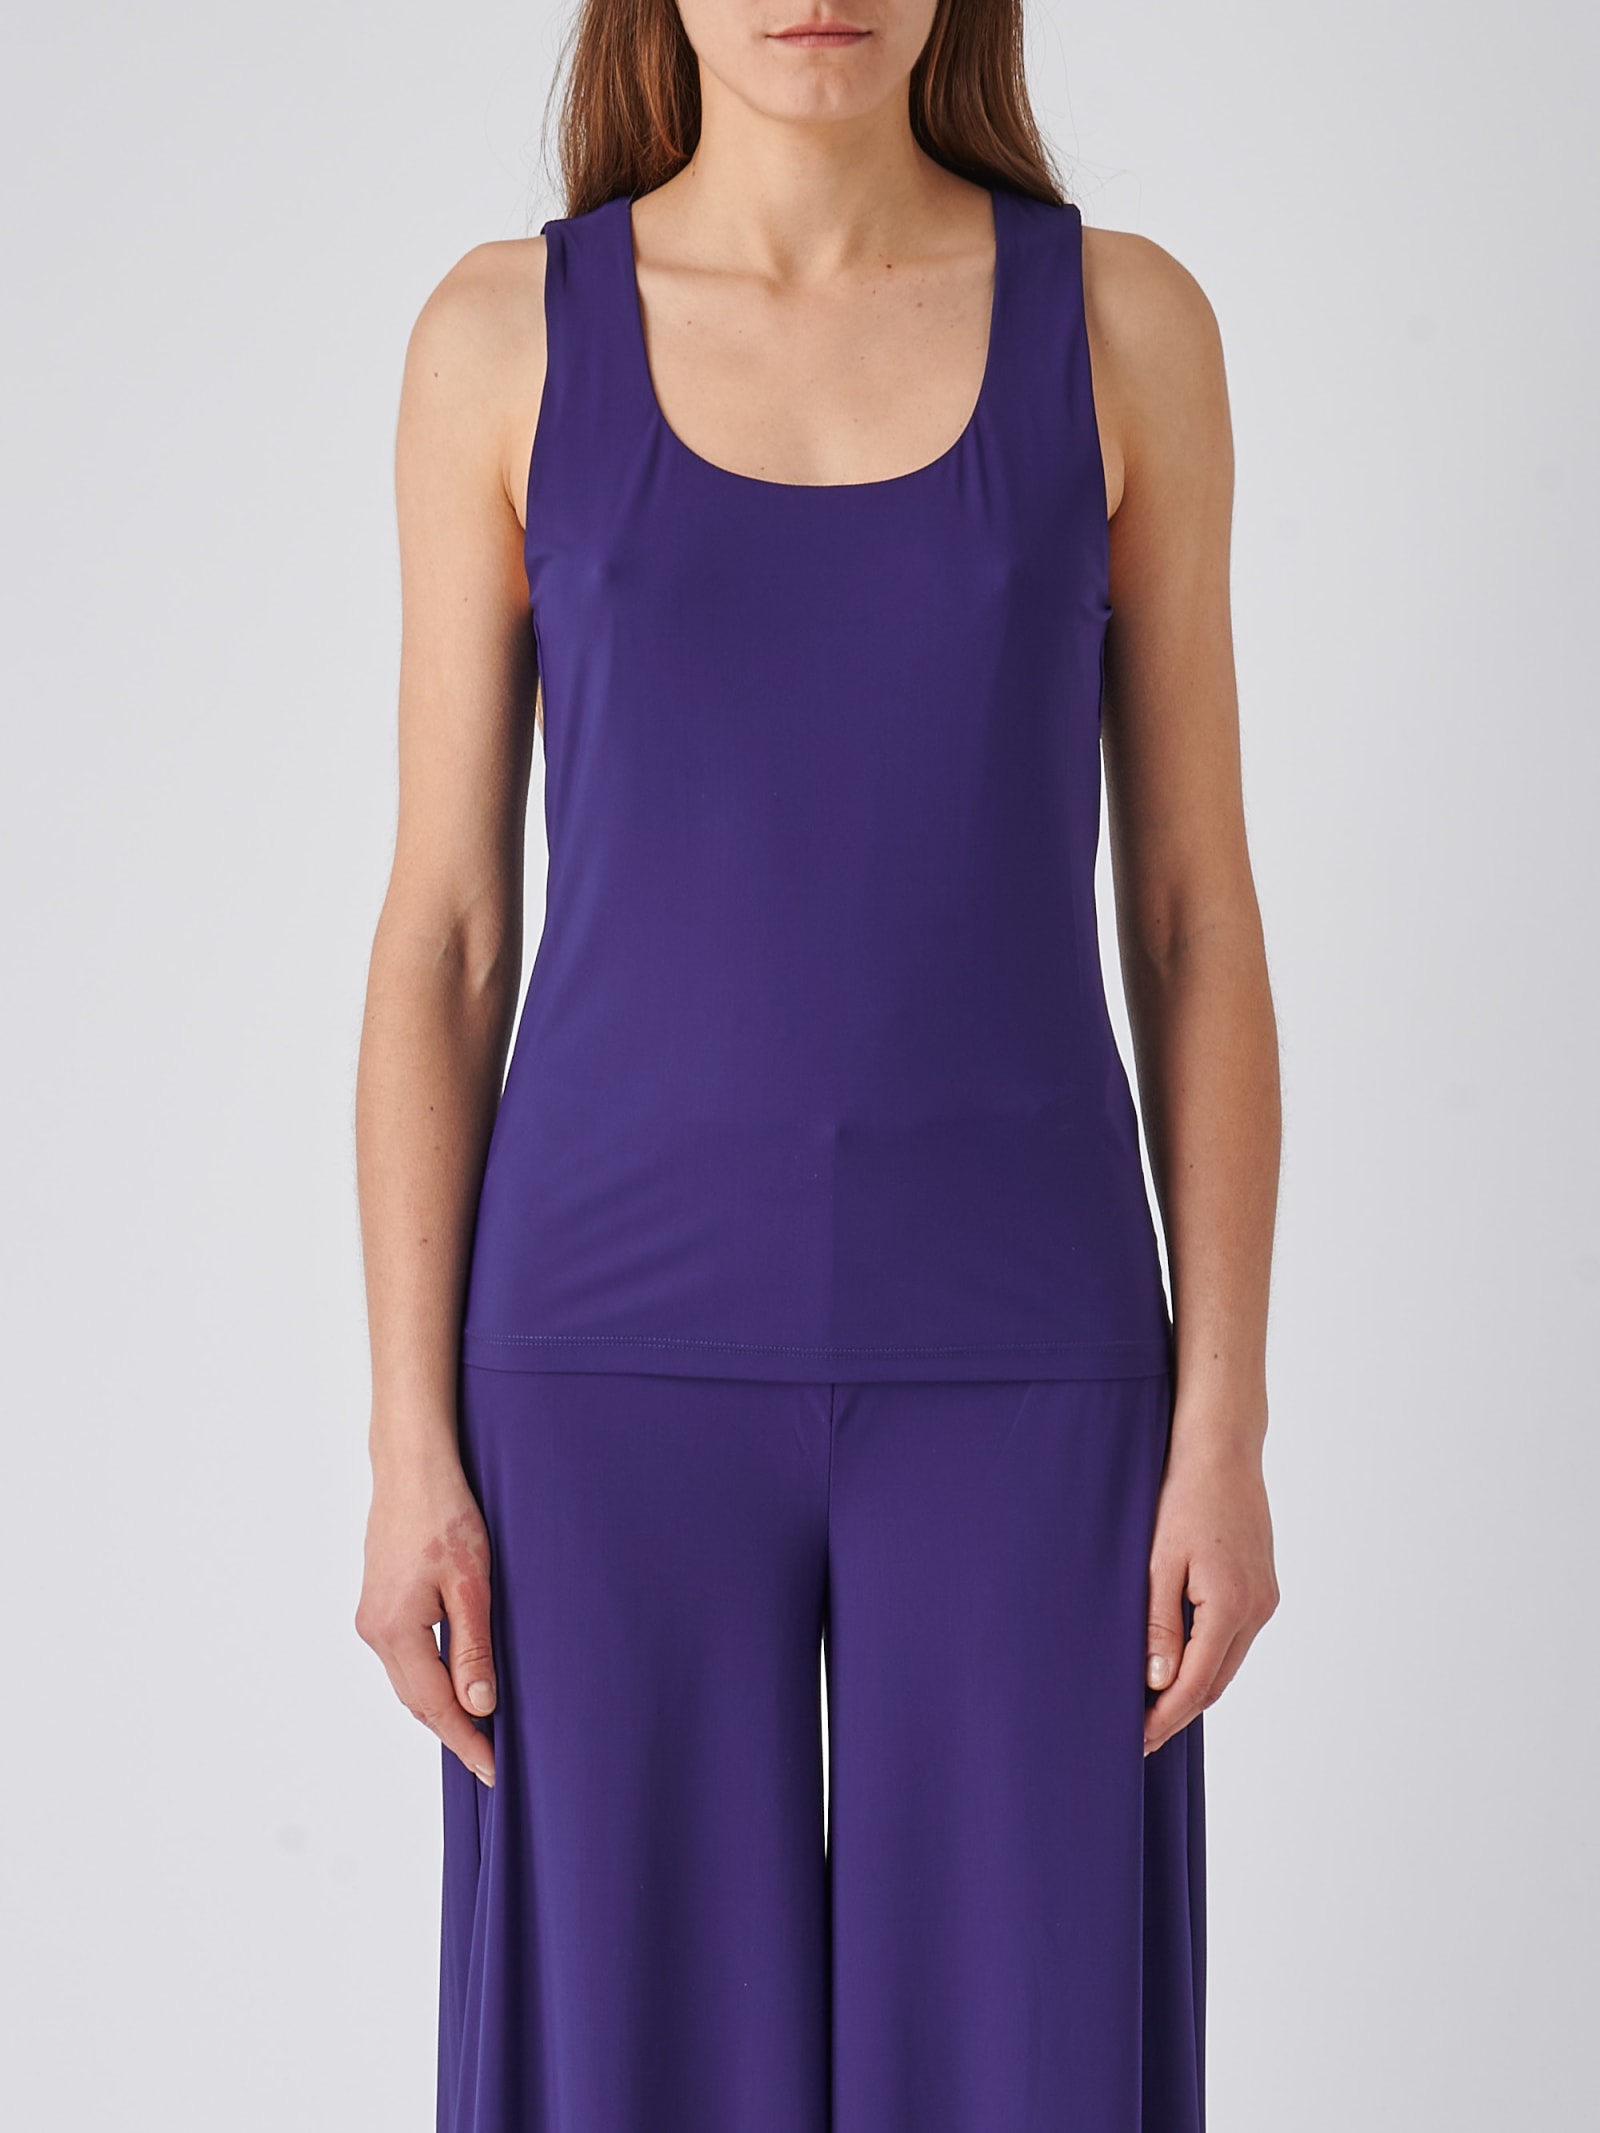 Maliparmi Top Soft Jersey Top-wear In Blu Notte